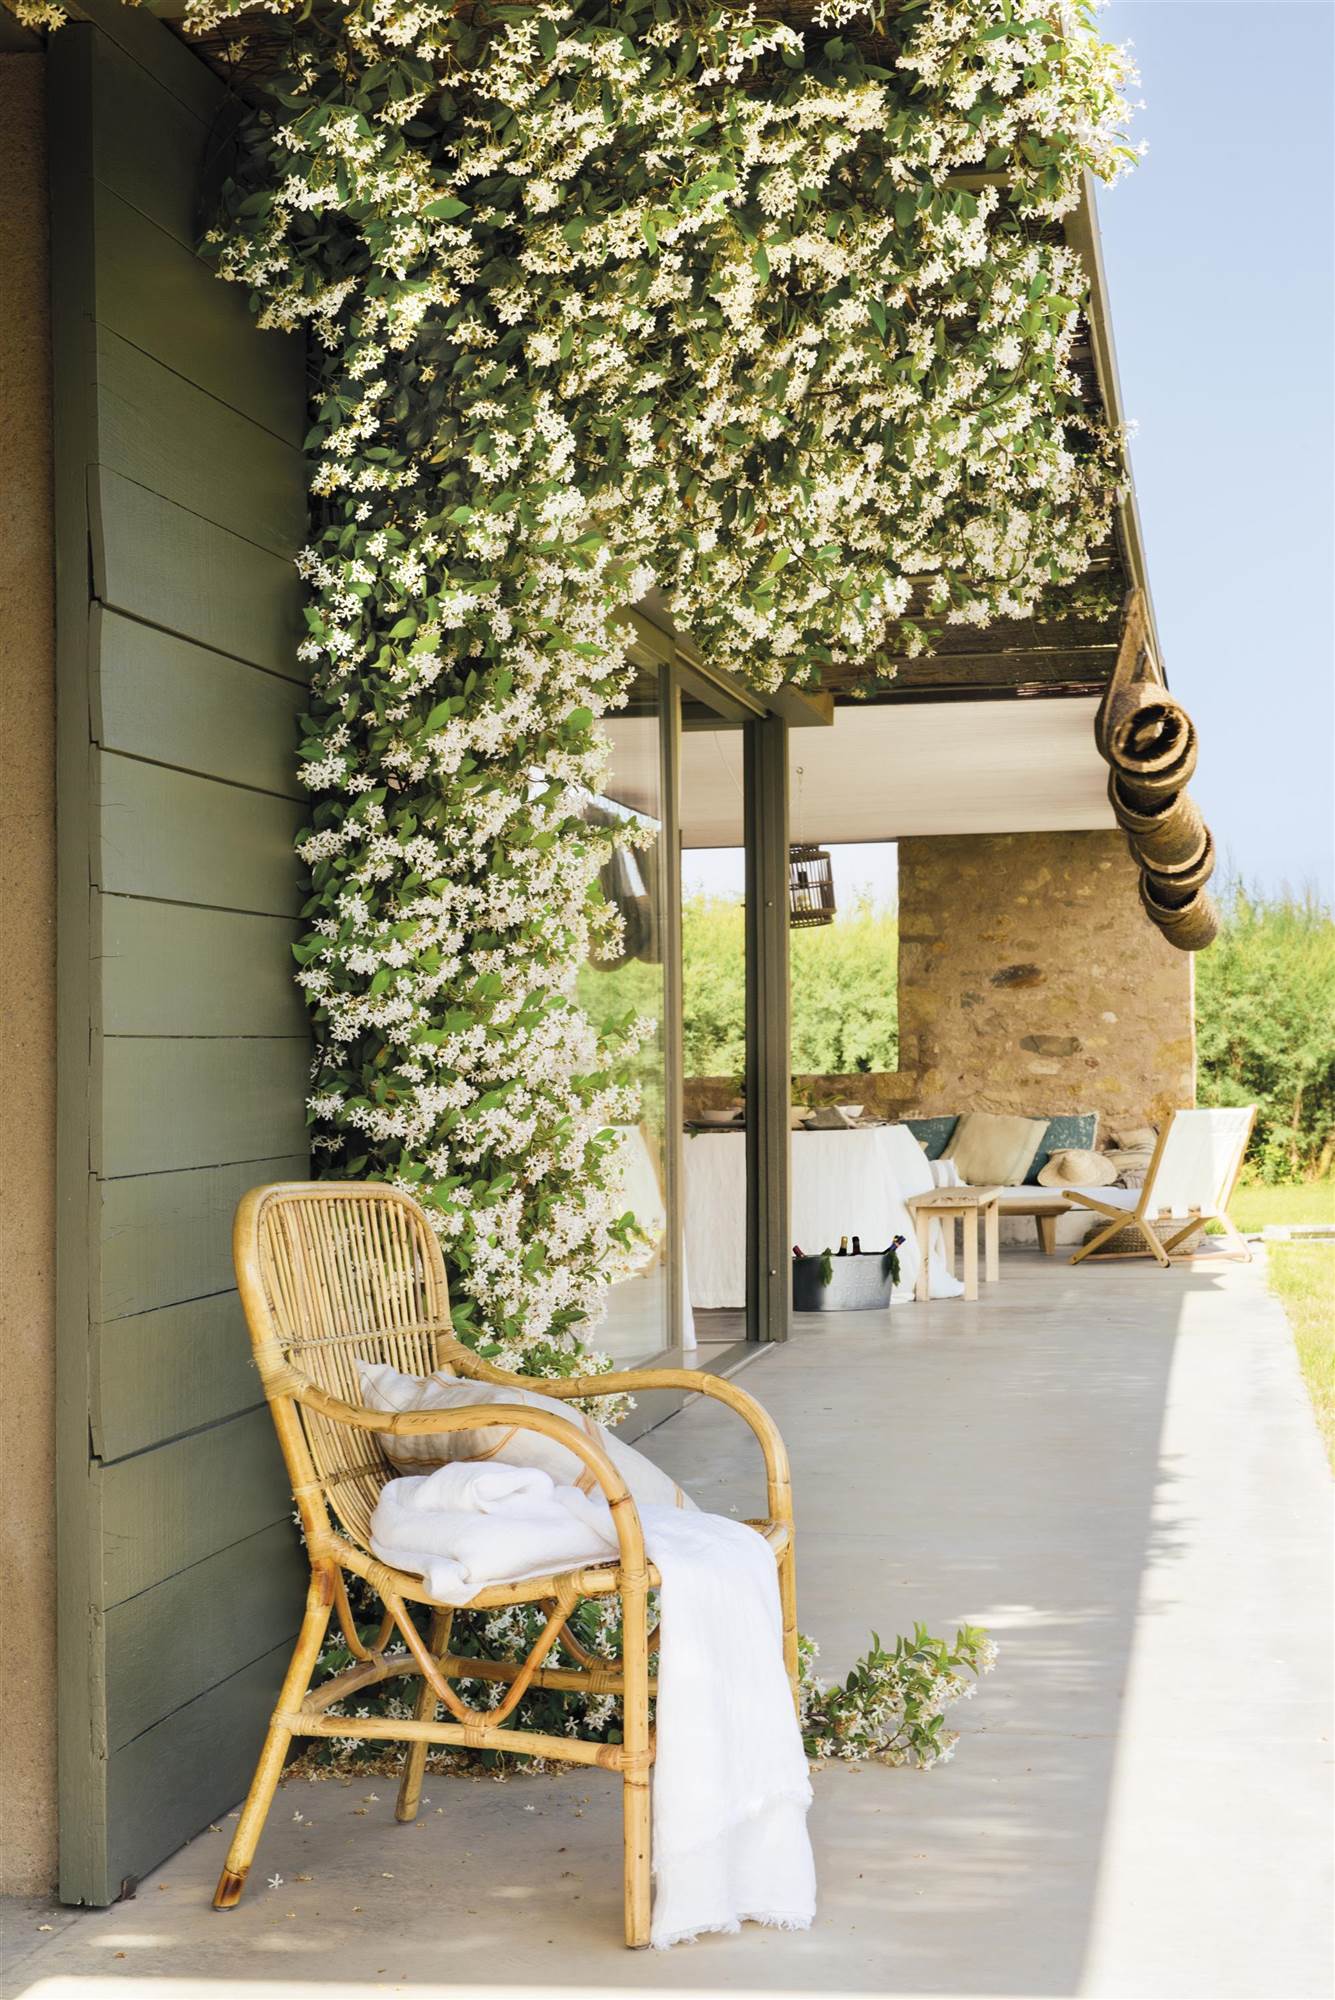 Plantas trepadoras y enredaderas: un porche con una planta trepadora de jazmín blanco